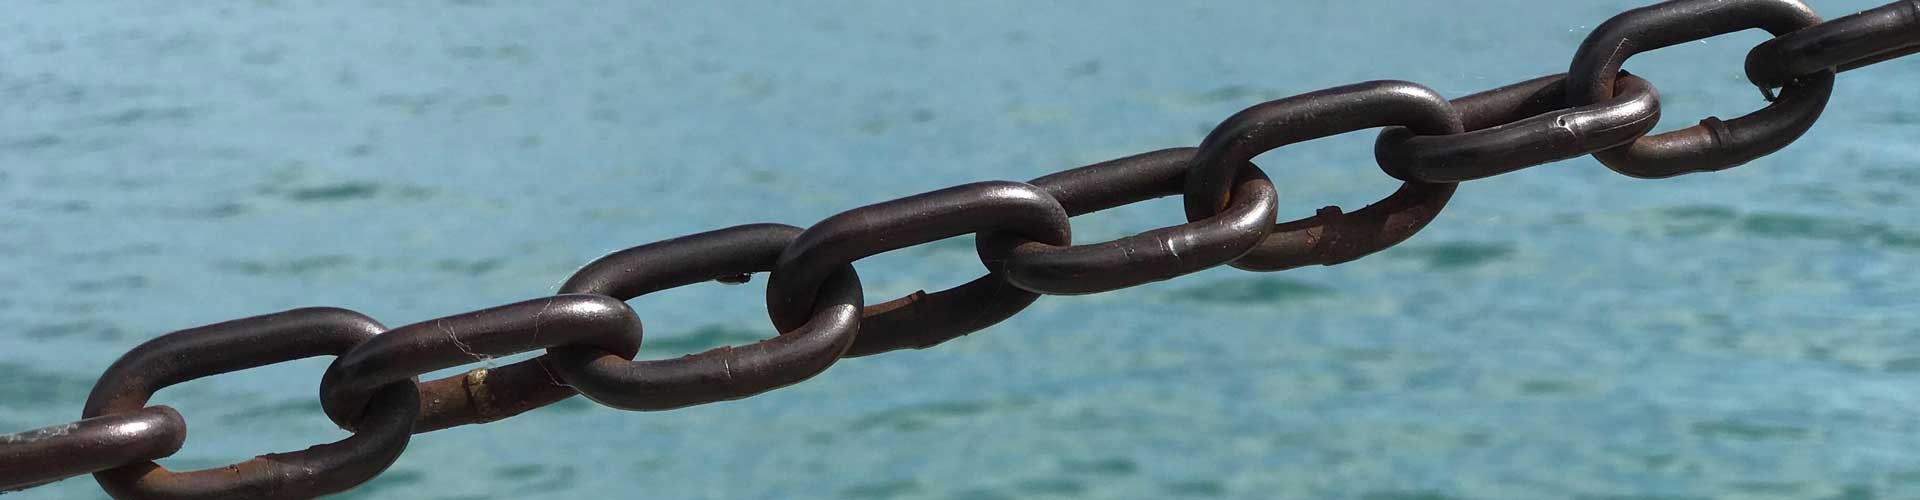 chain over sea